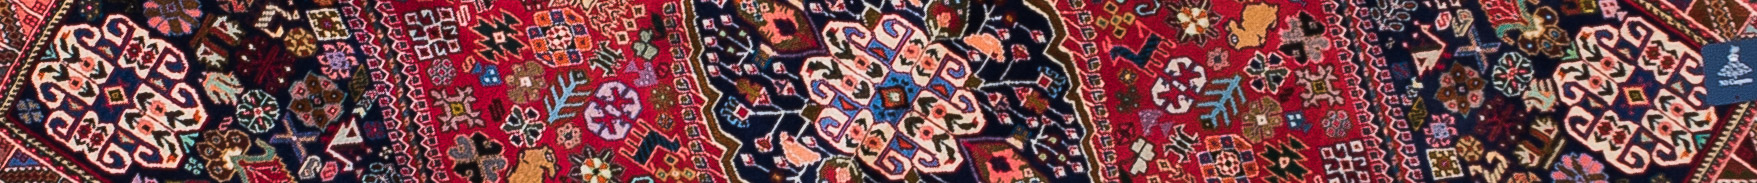 Abadeh Persian Carpet Rug N1Carpet Canada Montreal Tapis Persan 2900